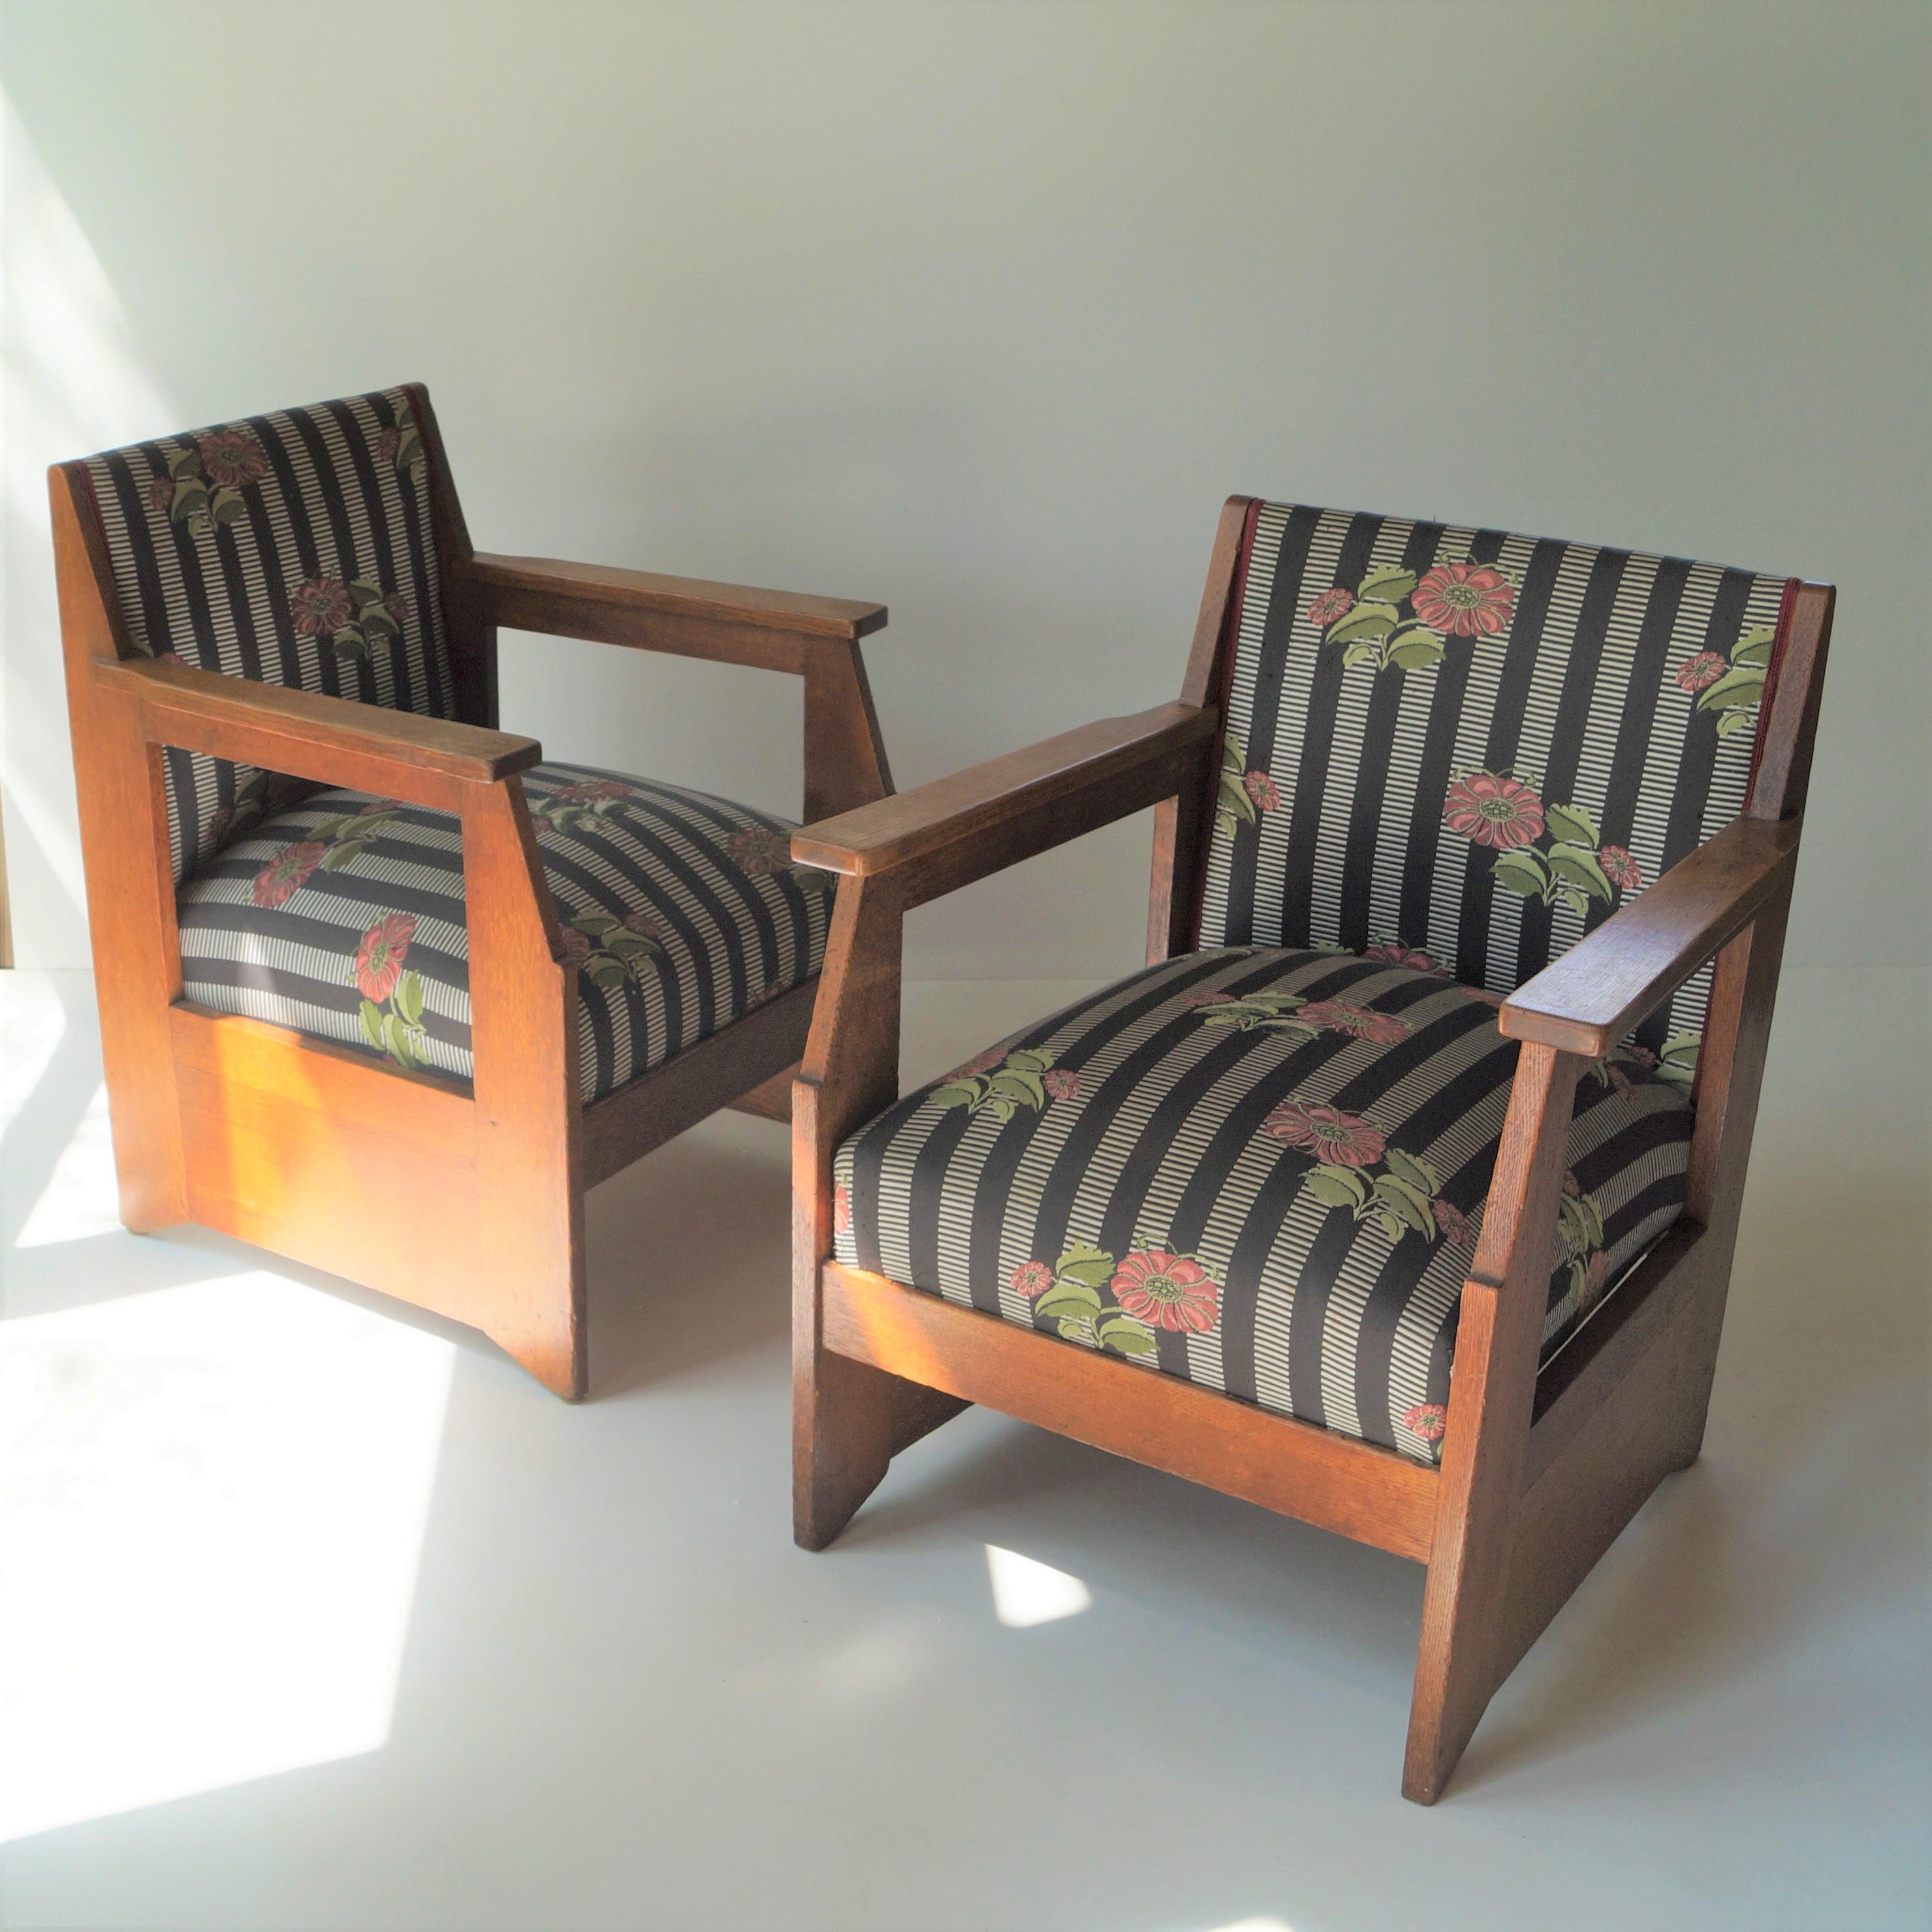 Ensemble de fauteuils de Hendrik Wouda pour Pander & sons, 1924. L'un des dessins emblématiques d'Hendrik Wouda, qui figure également dans les monographies les plus référencées sur sa vie et son œuvre (photo incluse). Une chaise similaire est